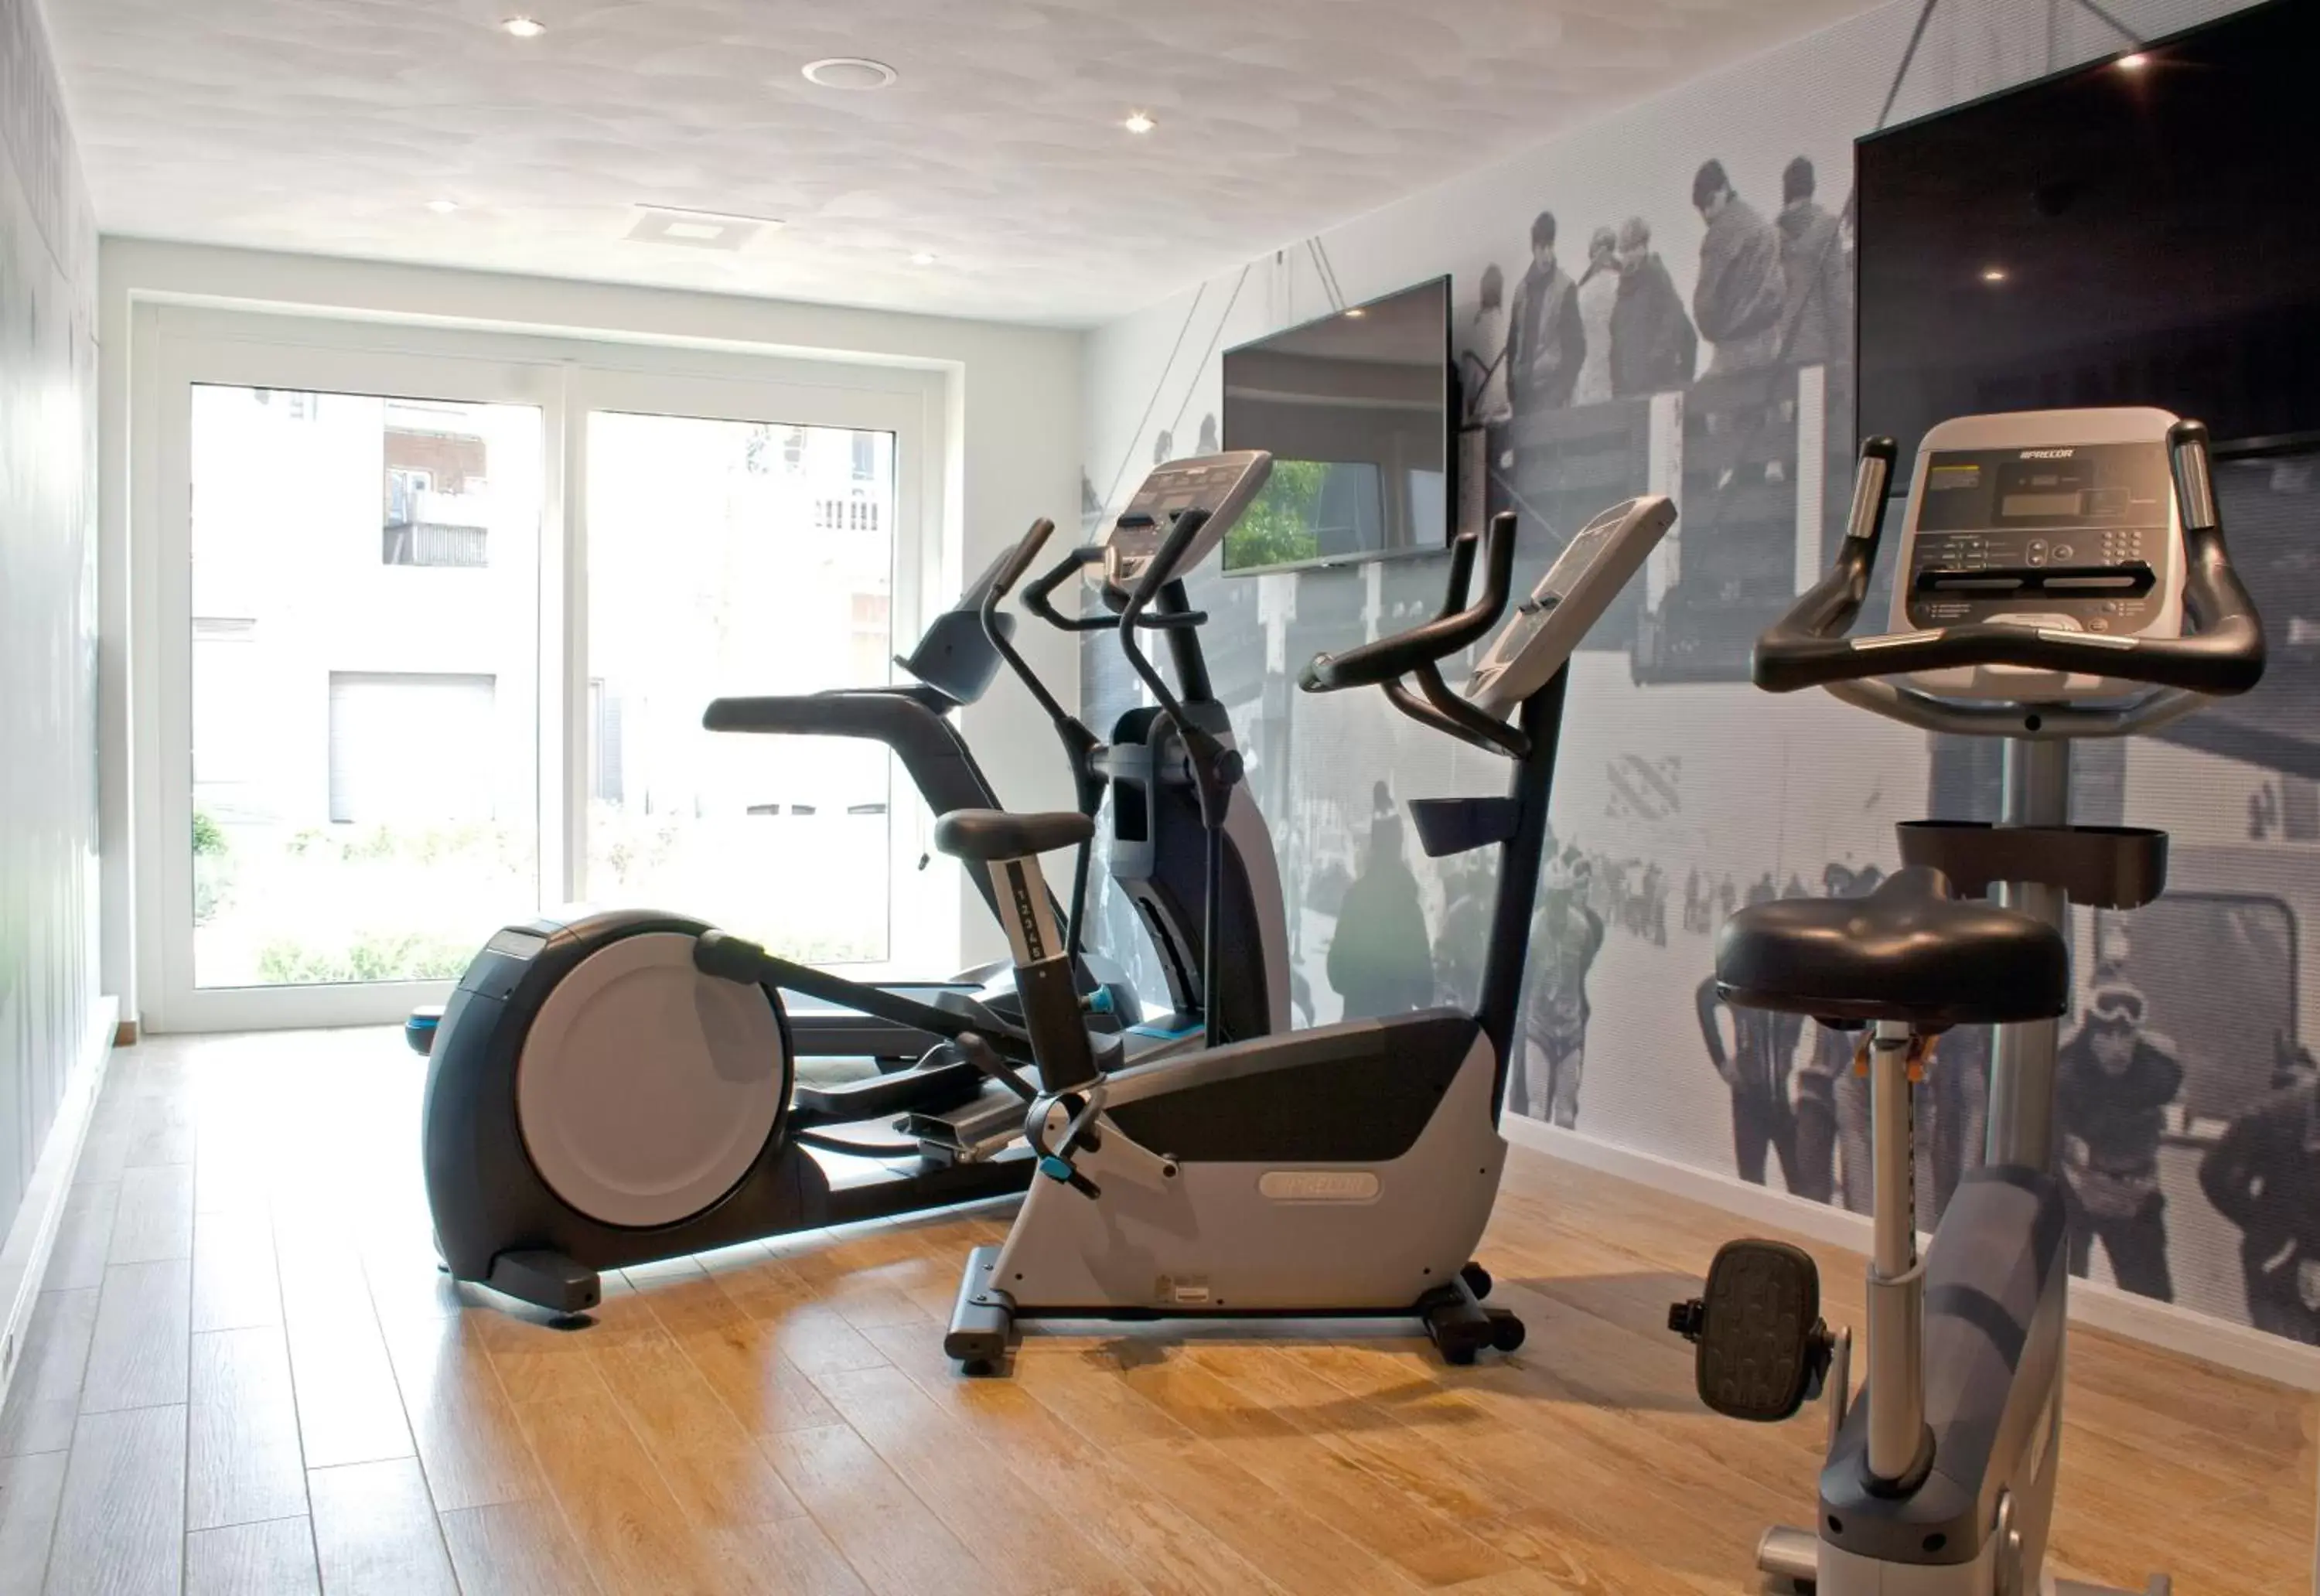 Fitness centre/facilities, Fitness Center/Facilities in Bastion Hotel Arnhem